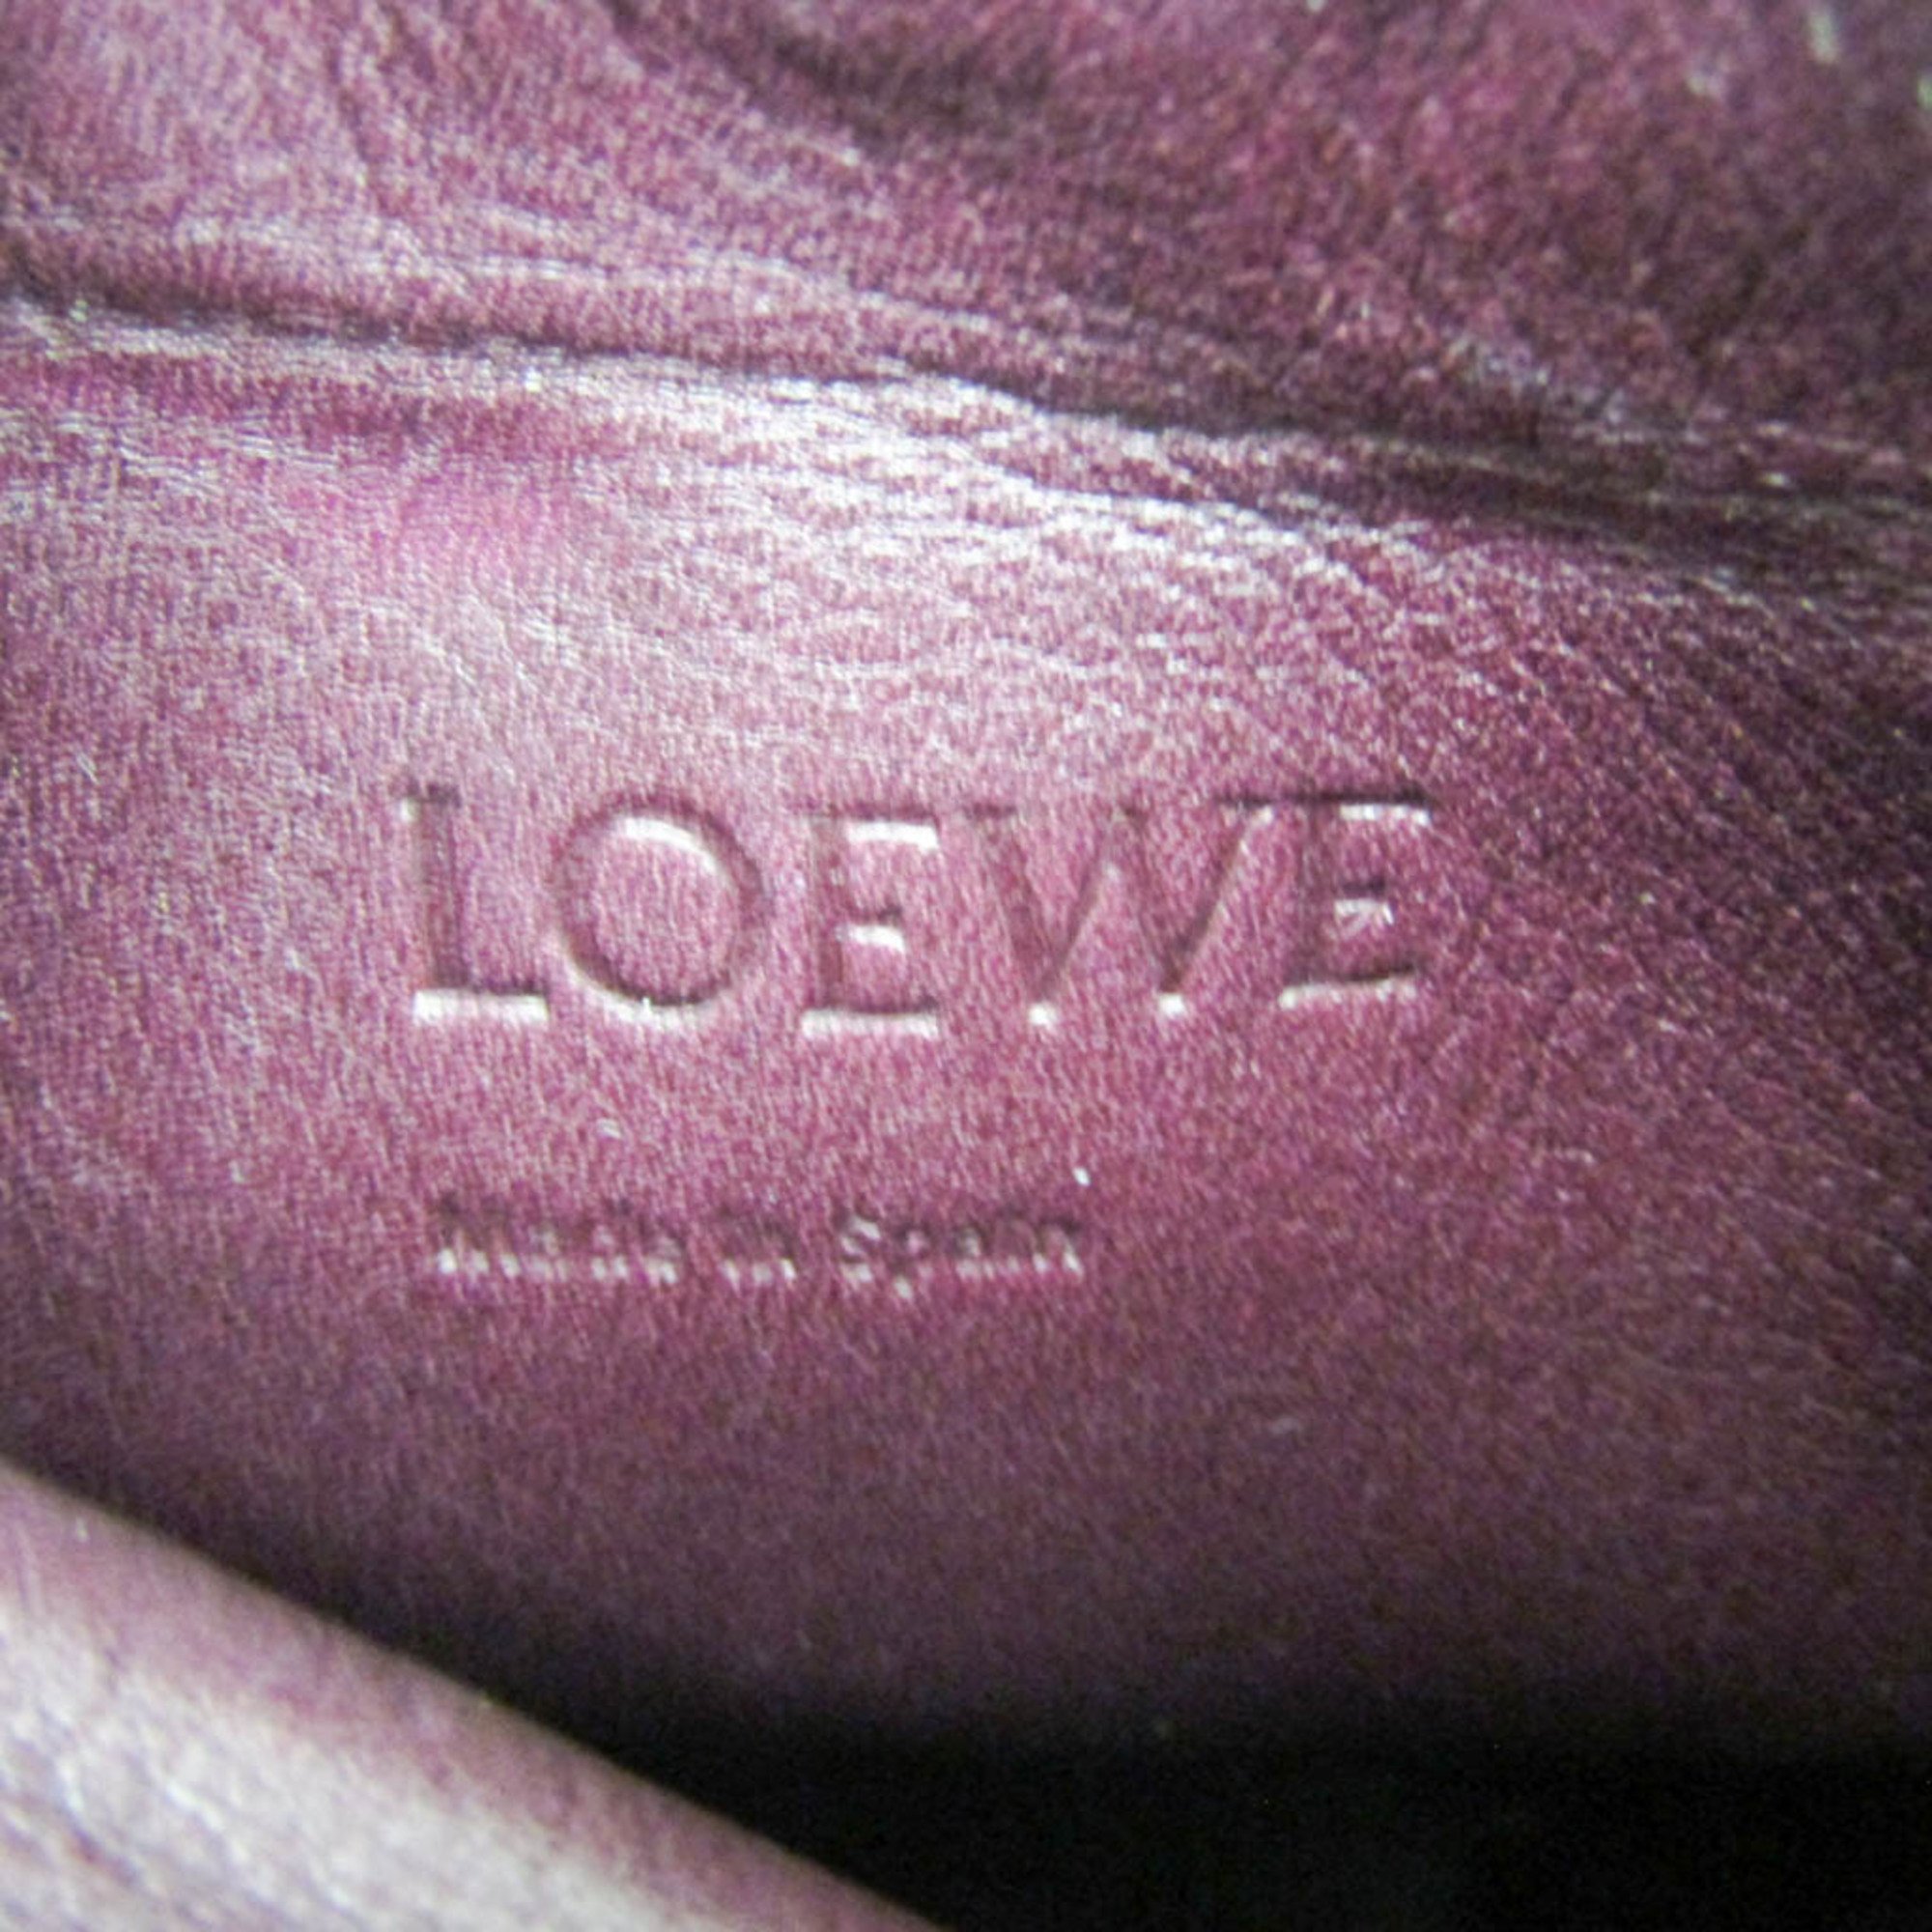 Loewe Gate Pocket 109.30.Z42 Women's Leather Shoulder Bag Bordeaux